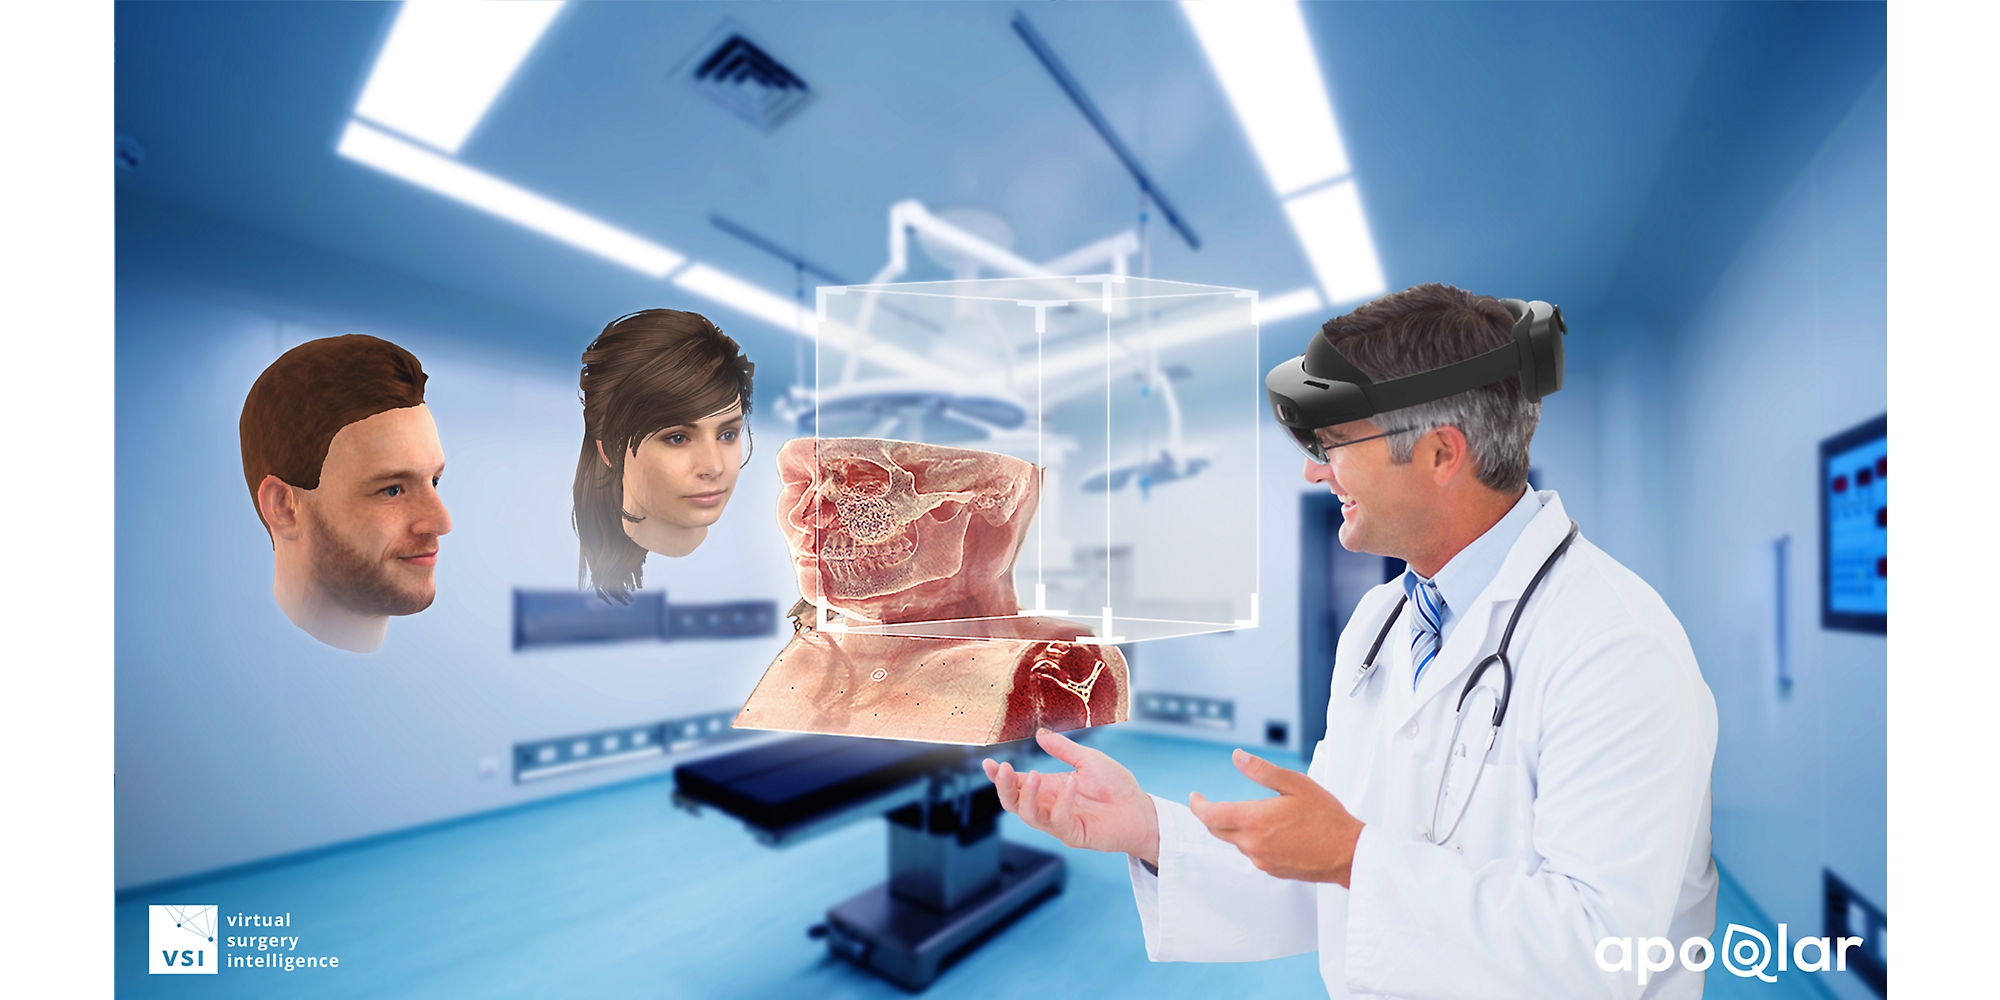 一名医生使用 HoloLens 2 设备查看医学图，并在混合现实中与另外两人交谈。